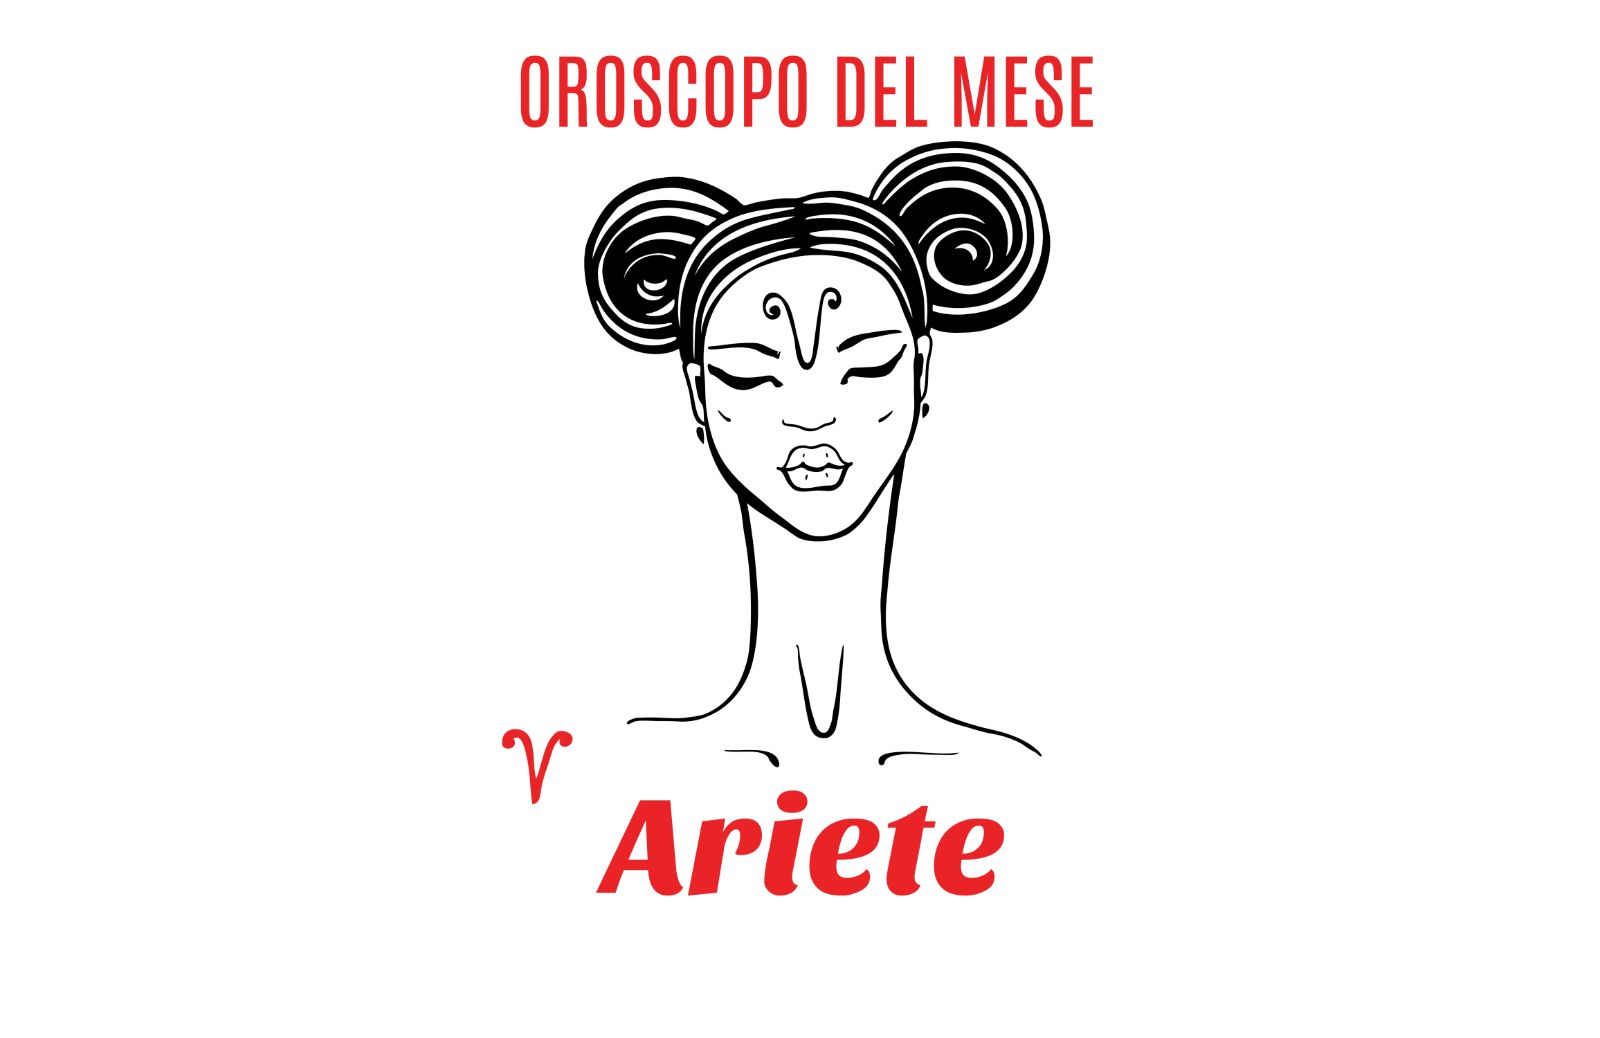 Oroscopo del mese: Ariete - marzo 2018